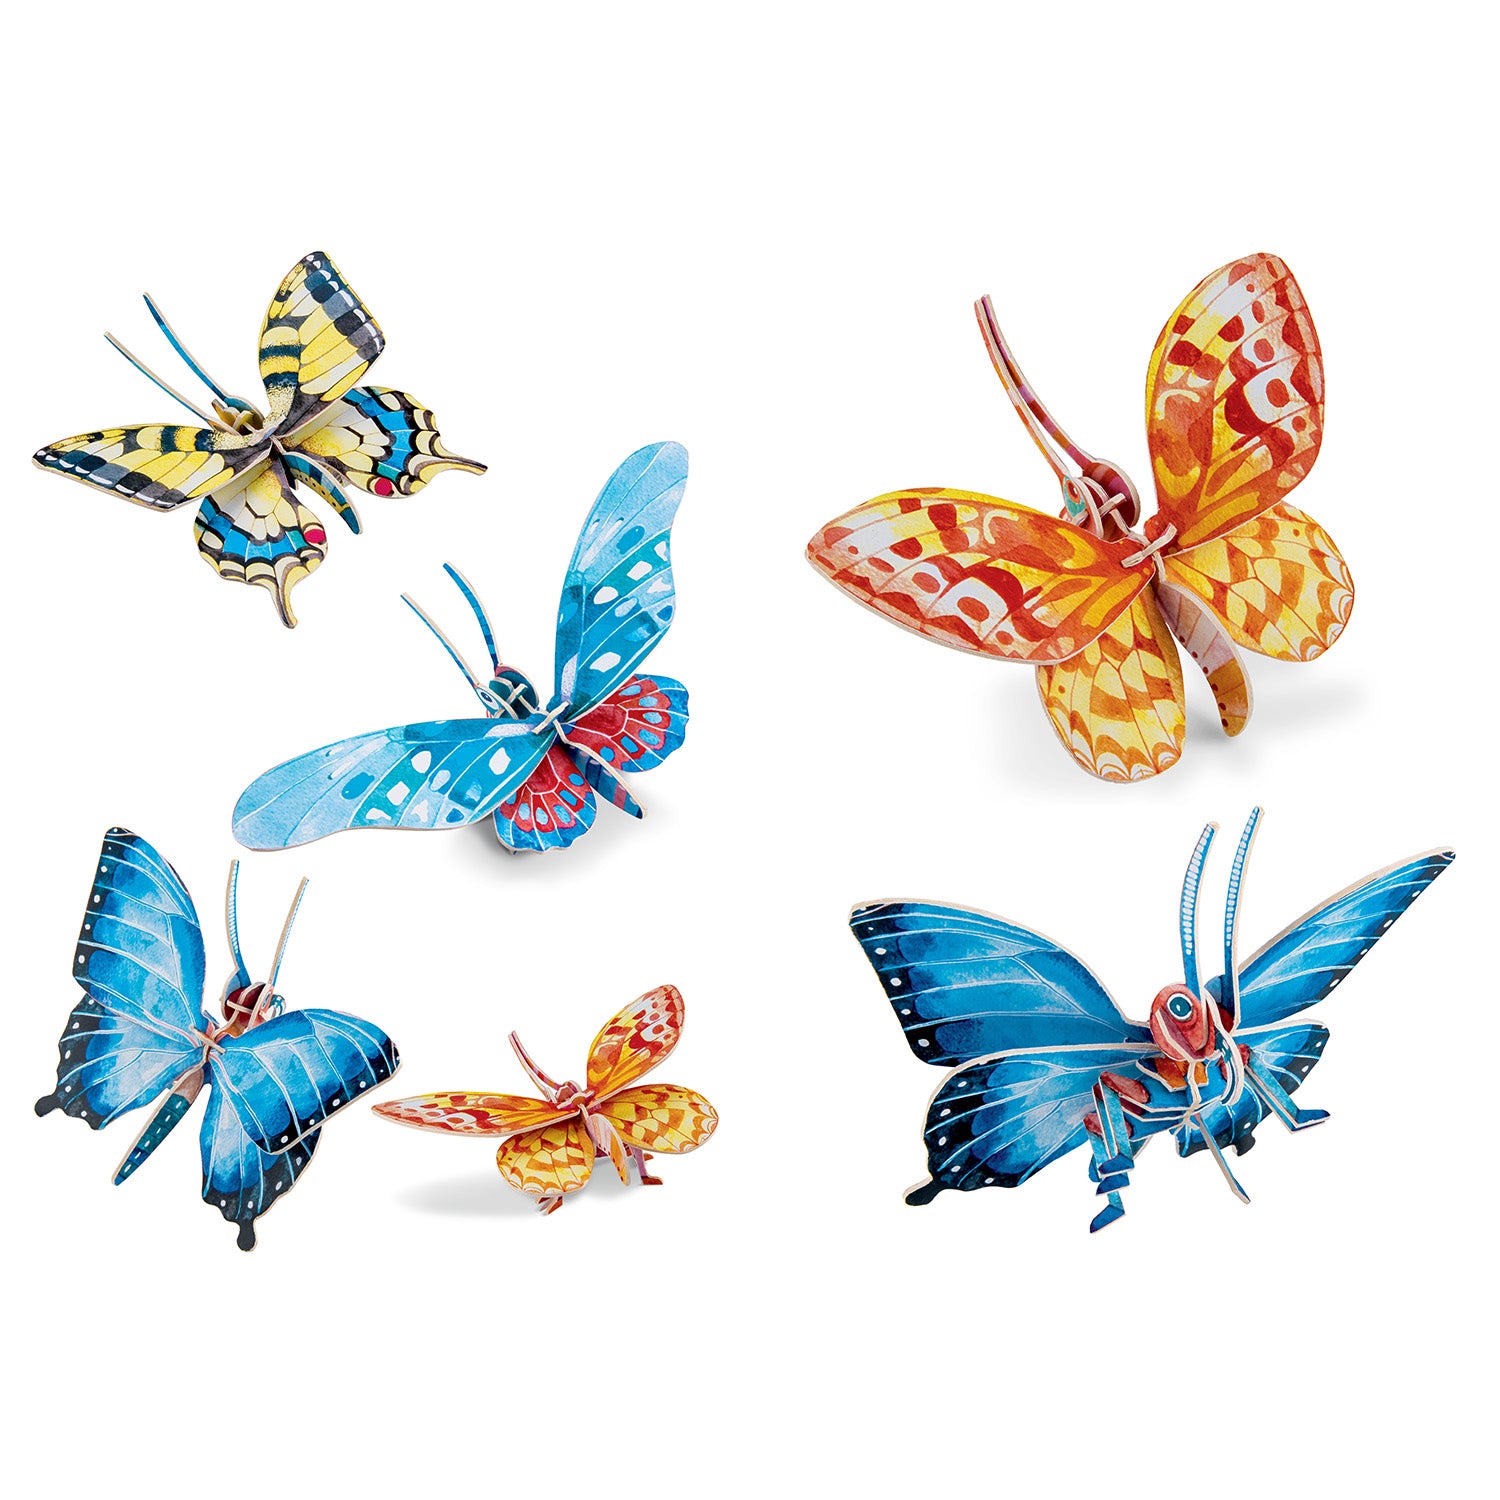 Construis en 3D – Papillons NE